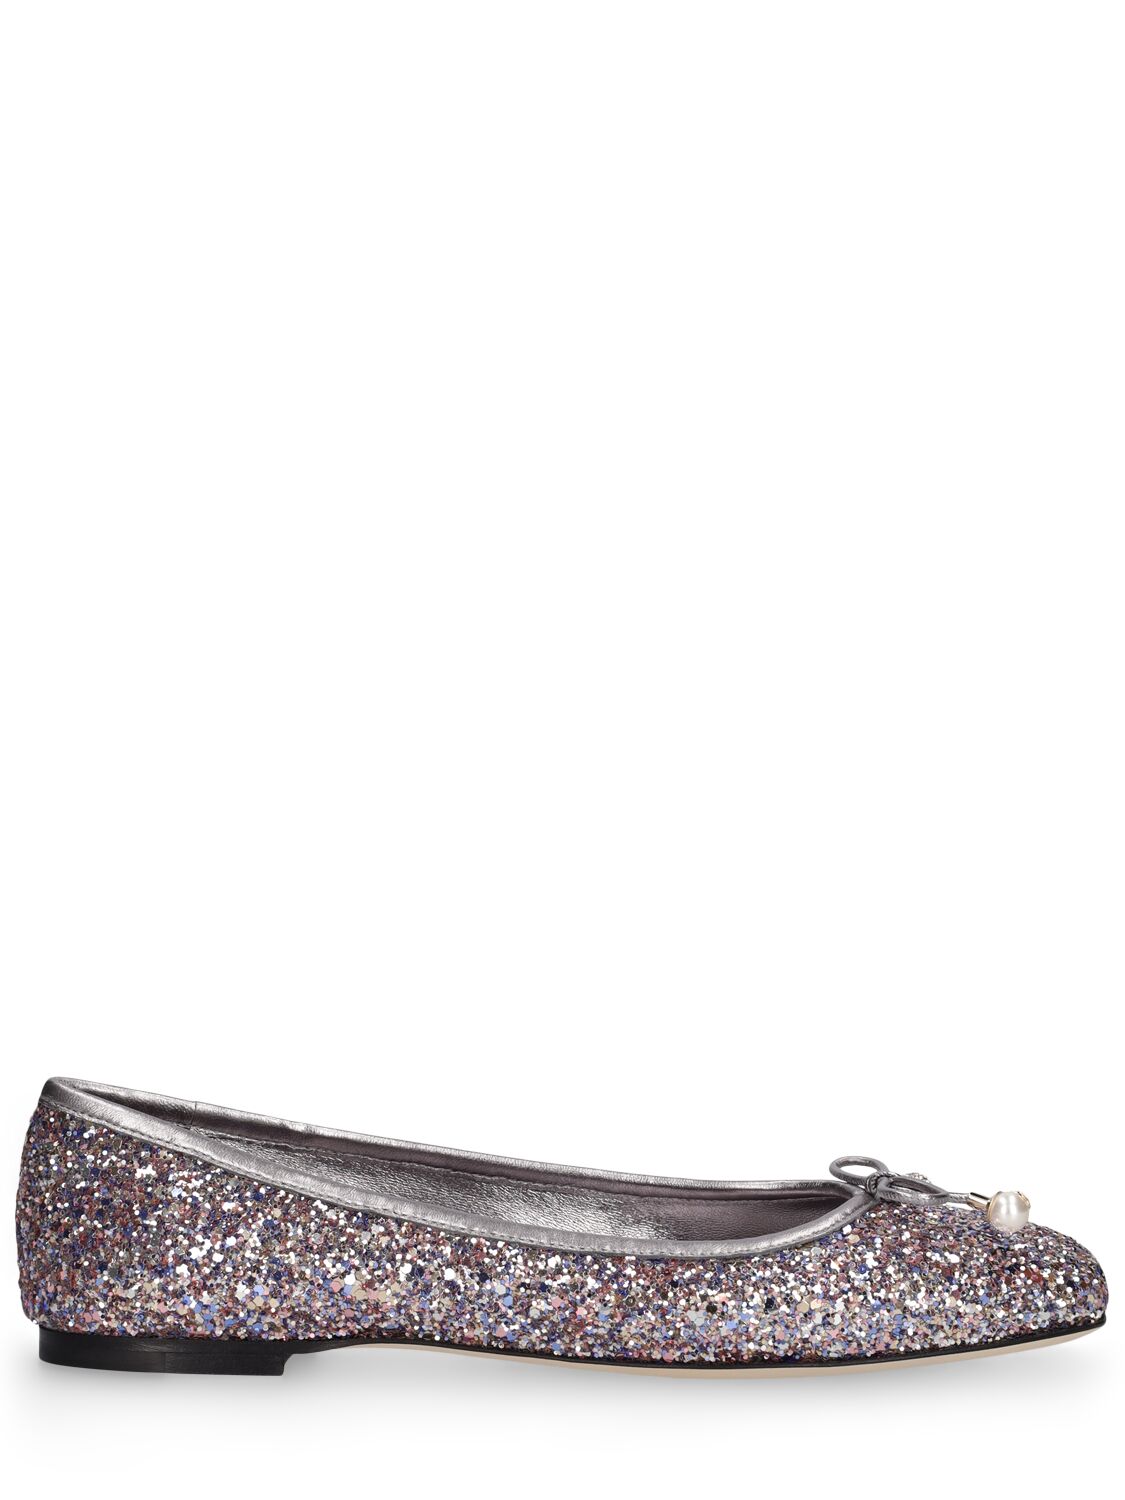 Image of 10mm Elme Glittered Ballerina Flats